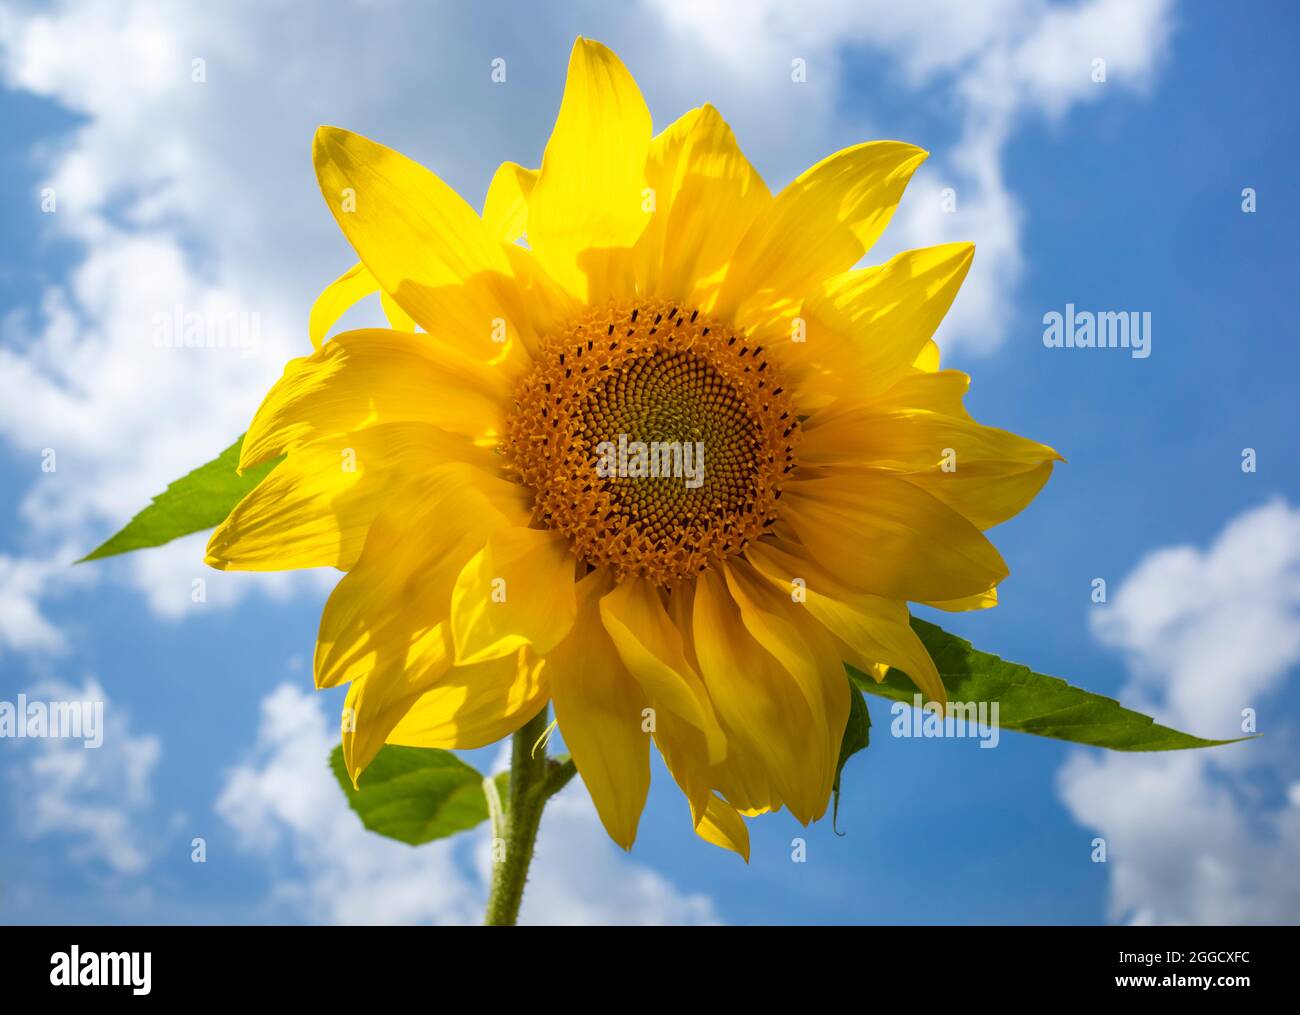 sunflower on sky Stock Photo